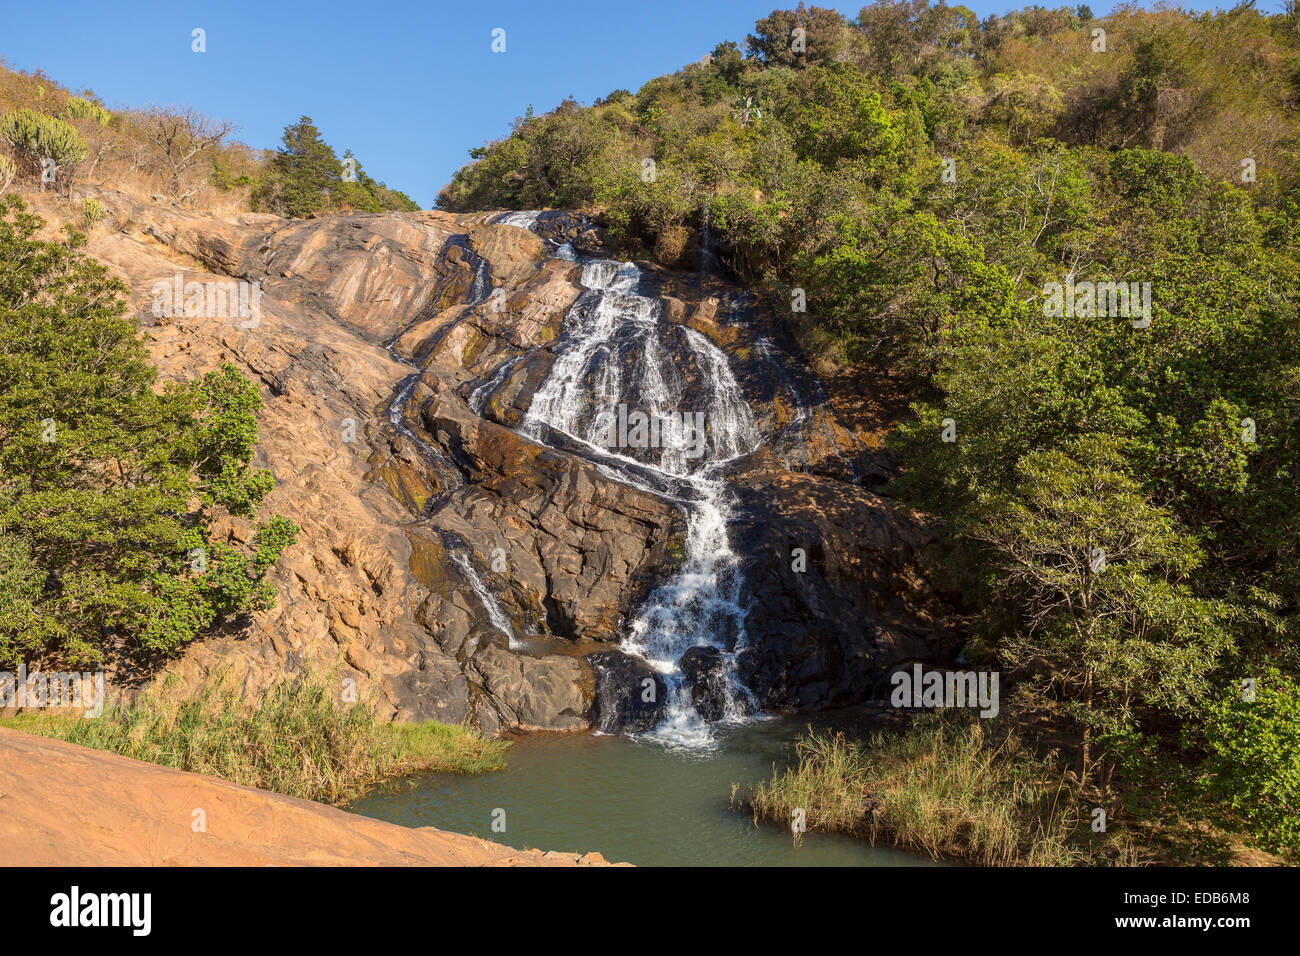 HHOHHO, SWAZILAND, AFRICA - Phophonyane Riserva Naturale cascata a cascata verso il basso sulle rocce. Foto Stock